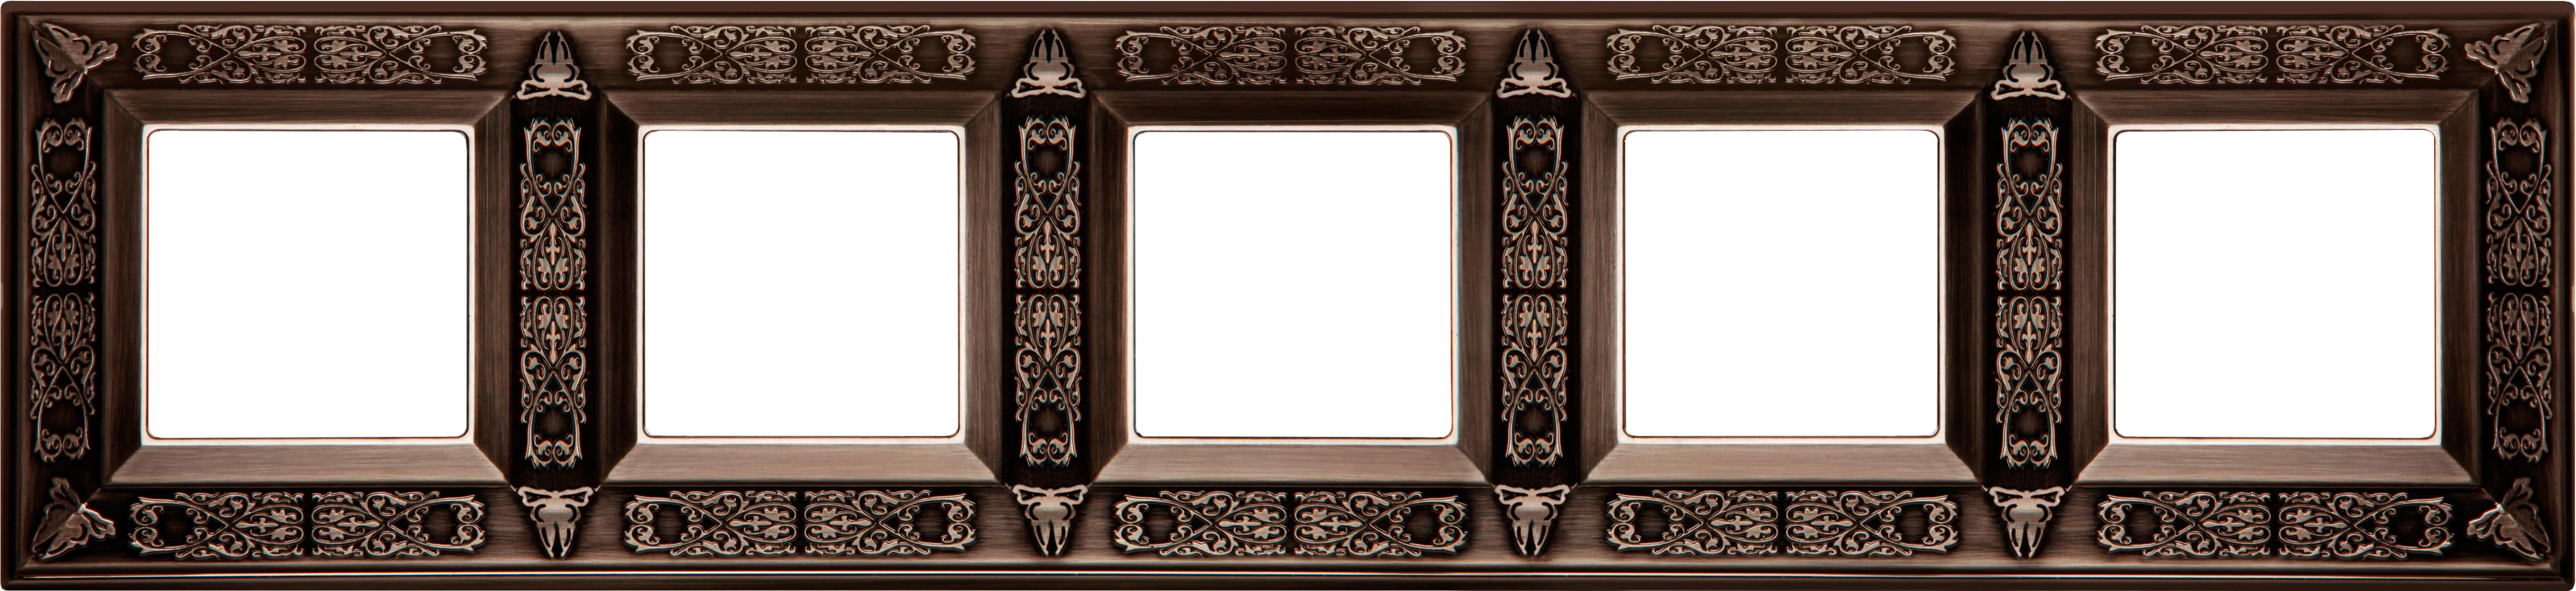  артикул FD01415CO название Рамка 5-ая (пятерная), цвет Состаренная медь, Granada, Fede